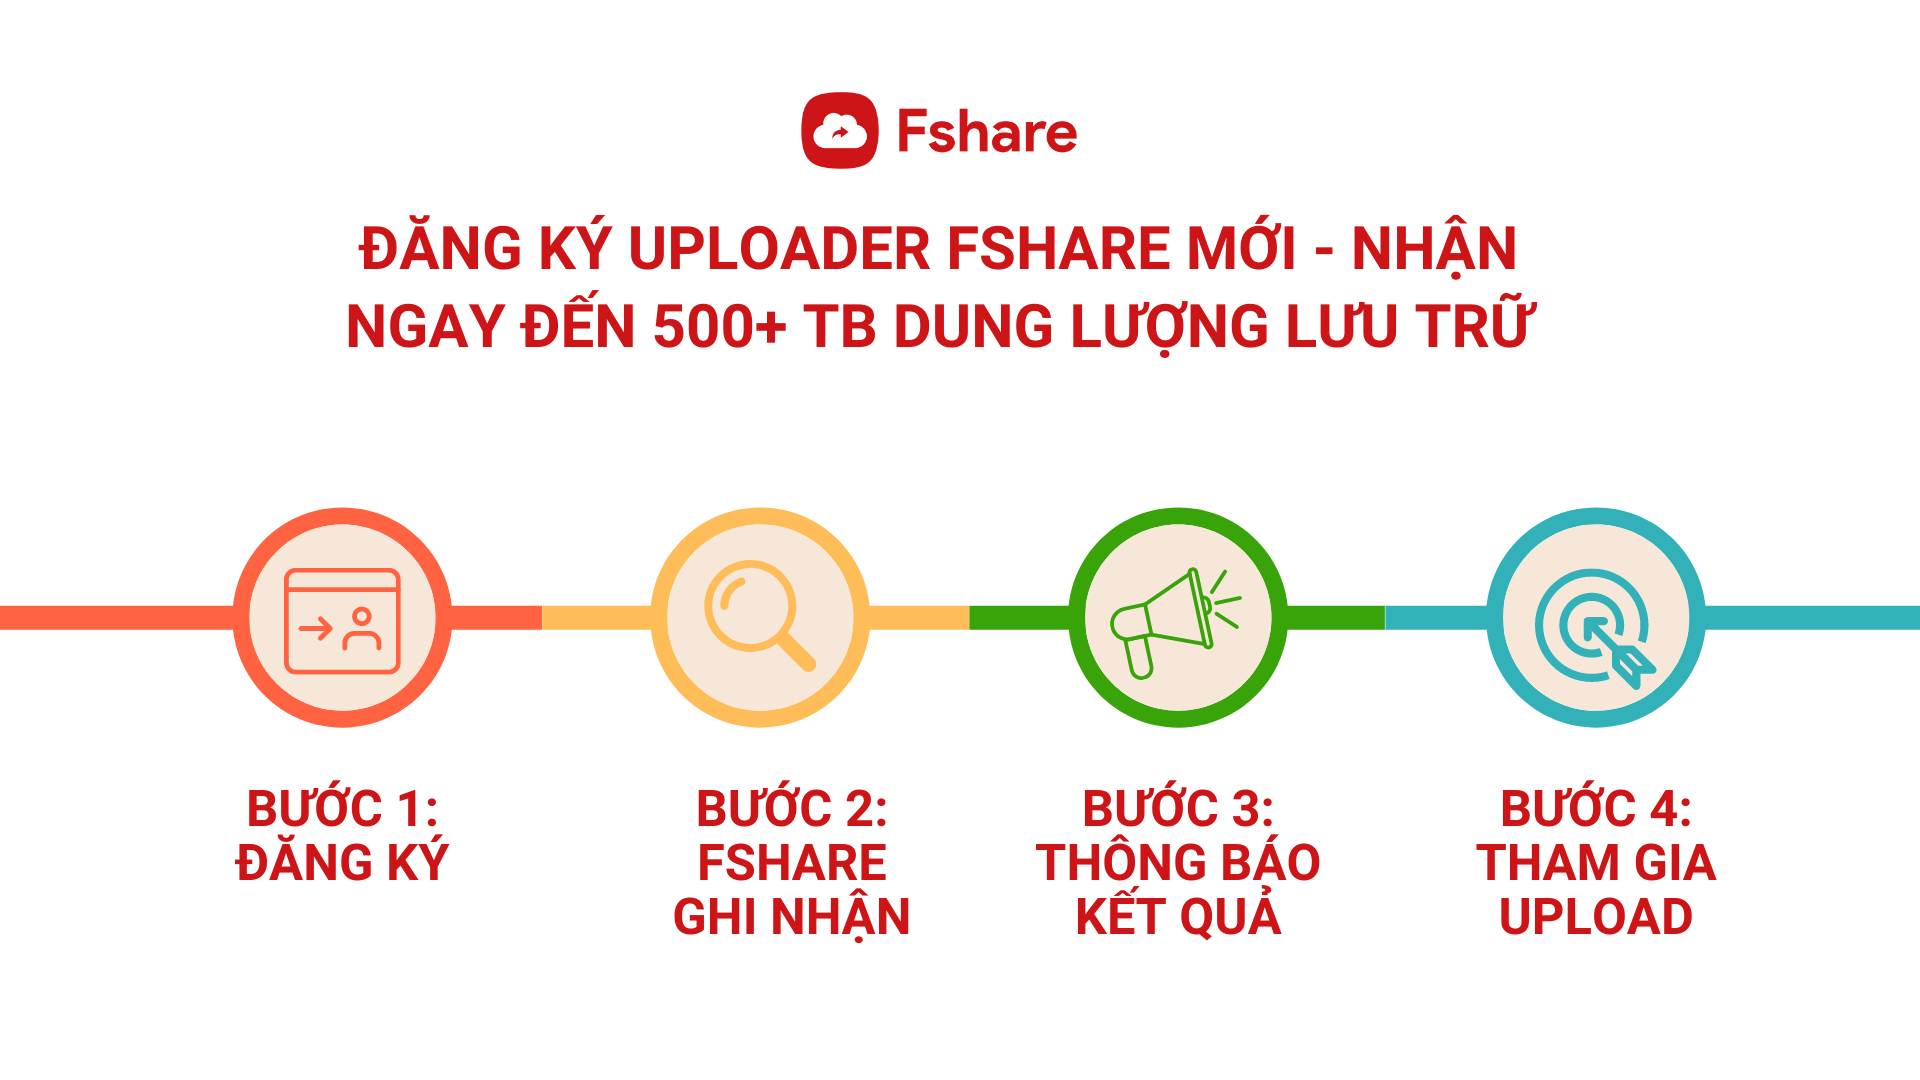 Fshare tặng 500+ TB dung lượng lưu trữ - Upload chia sẻ miễn phí